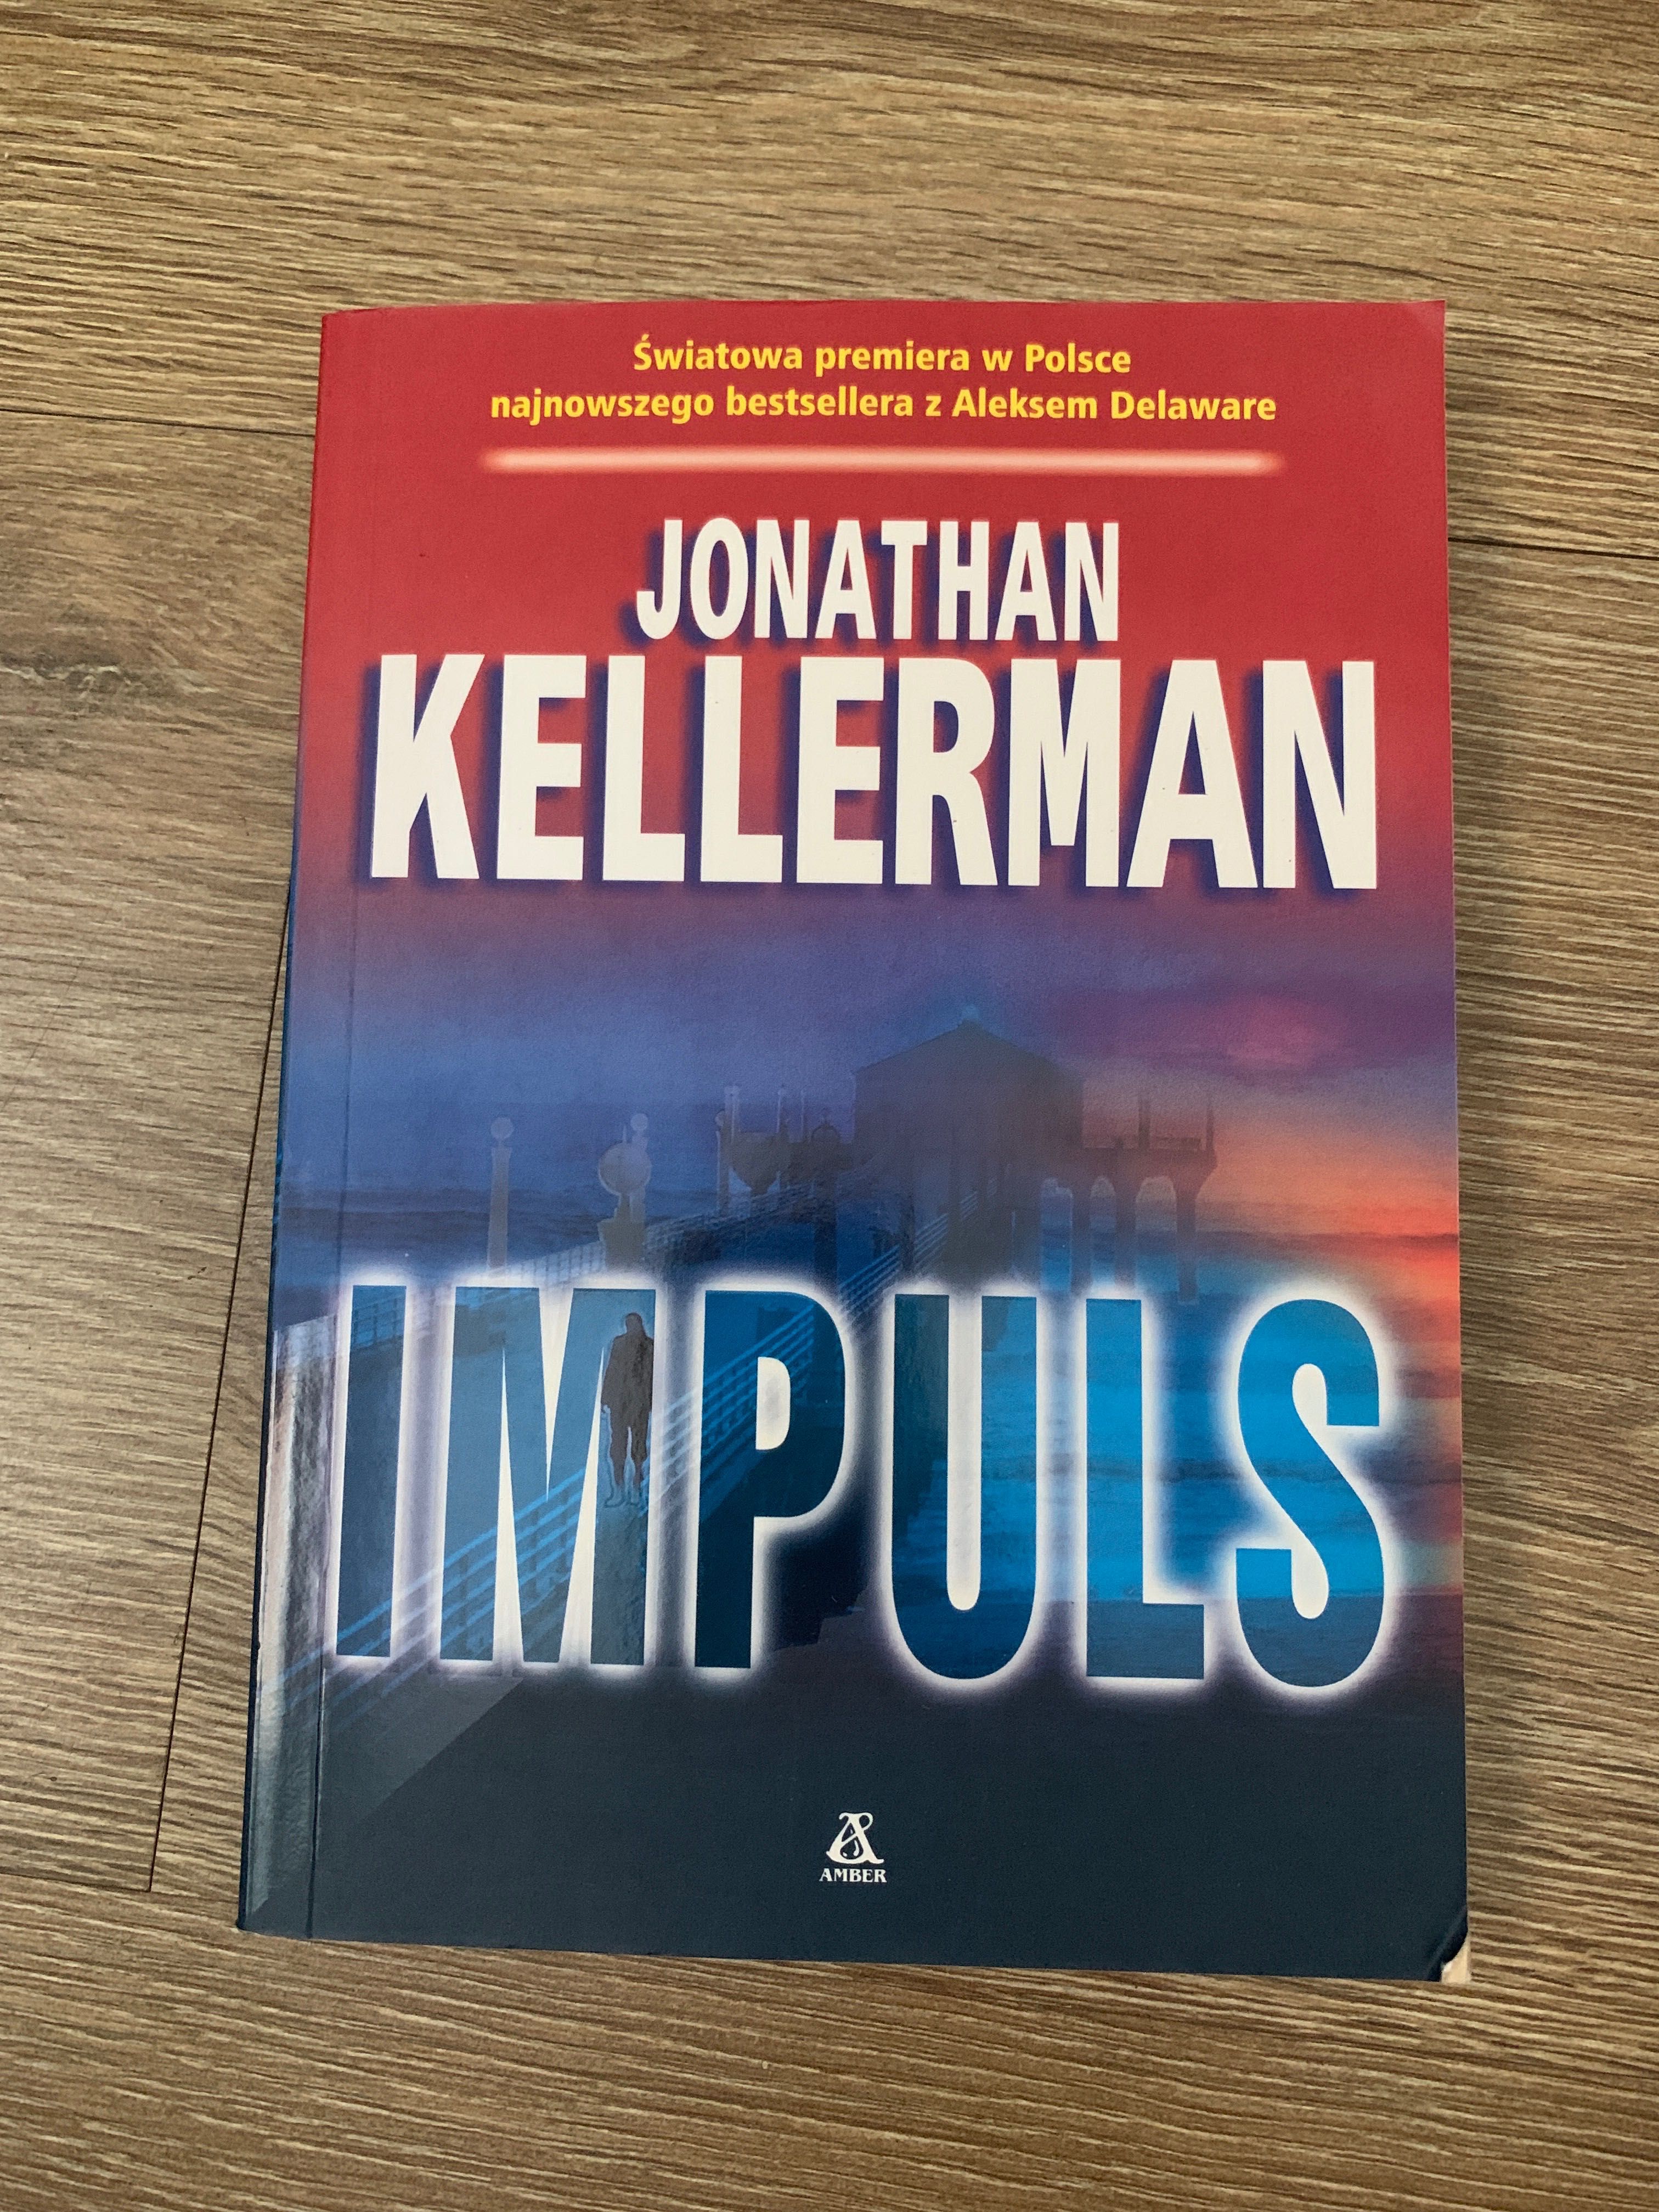 Książka "impuls" Jonathan Kellerman